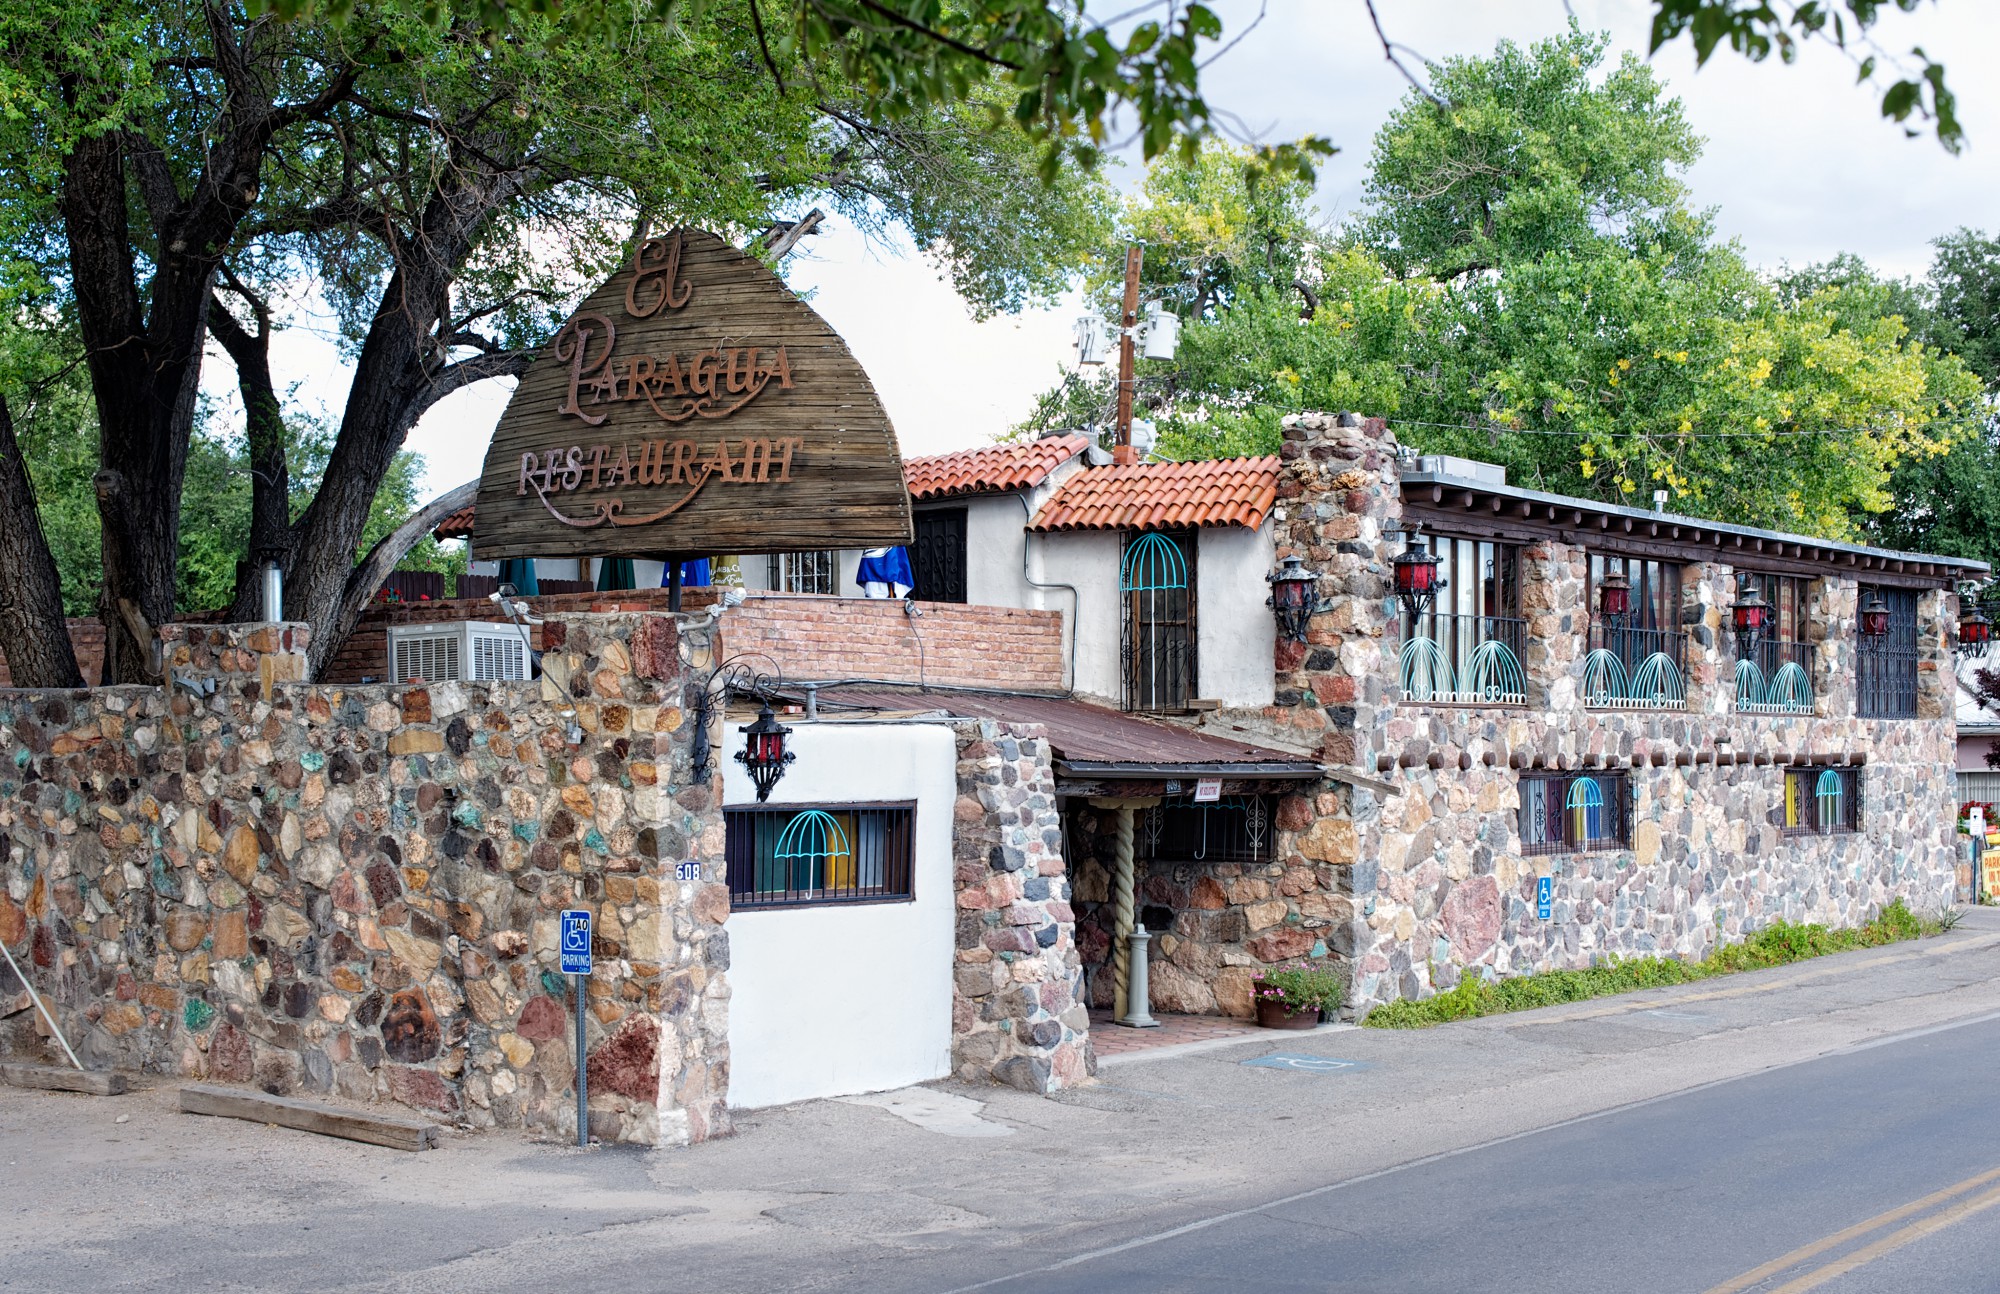 History of El Paragua